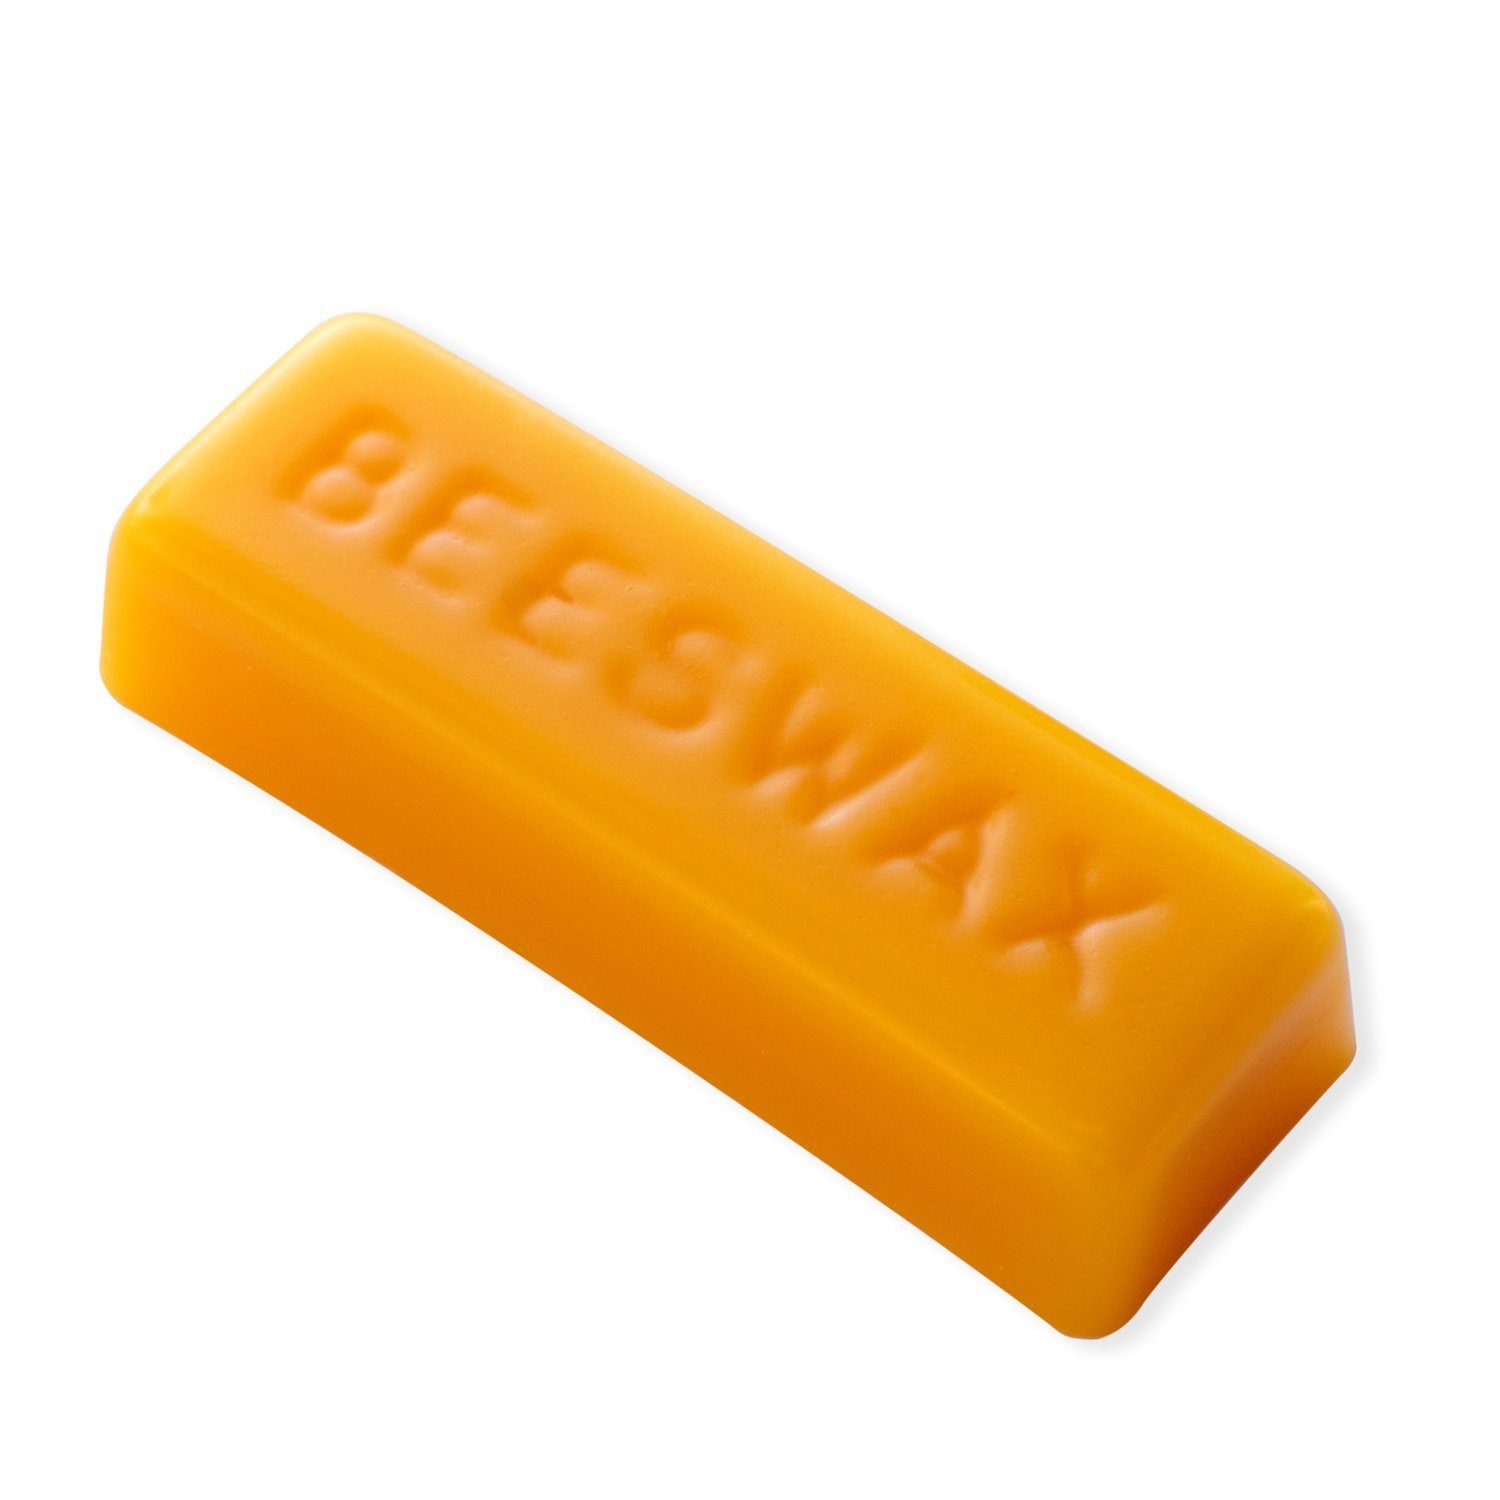 Bees Wax 1 oz Bar